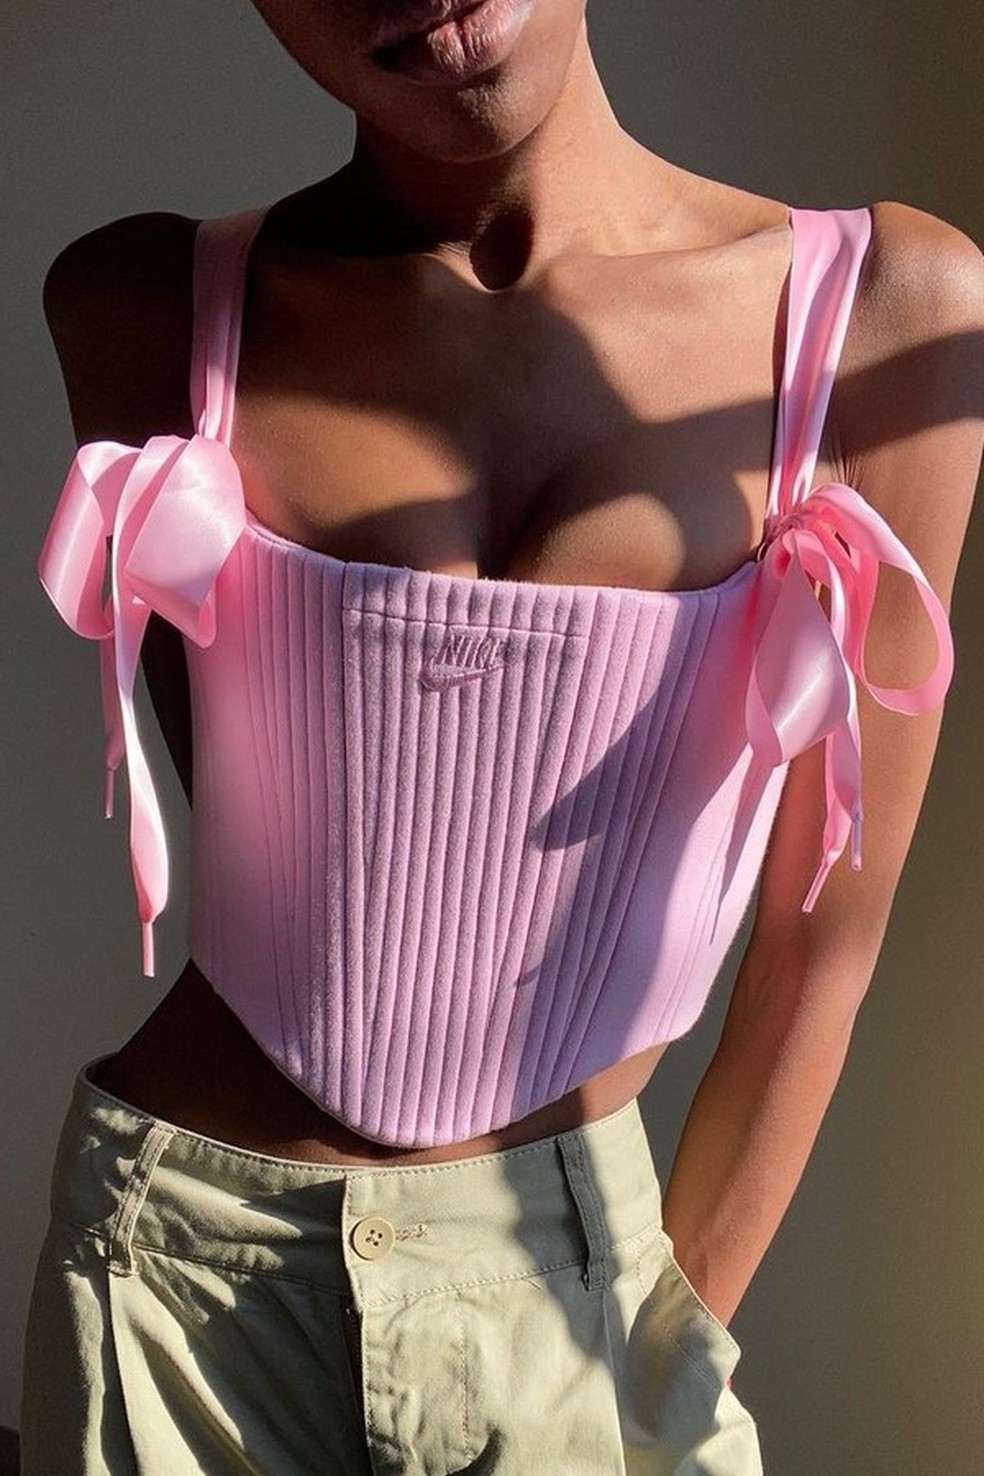 Kayla Sade é a designer por trás da marca Almost On Time, que produz corsets fazendo upcycling de peças (Foto: Reprodução Instagram) — Foto: Glamour